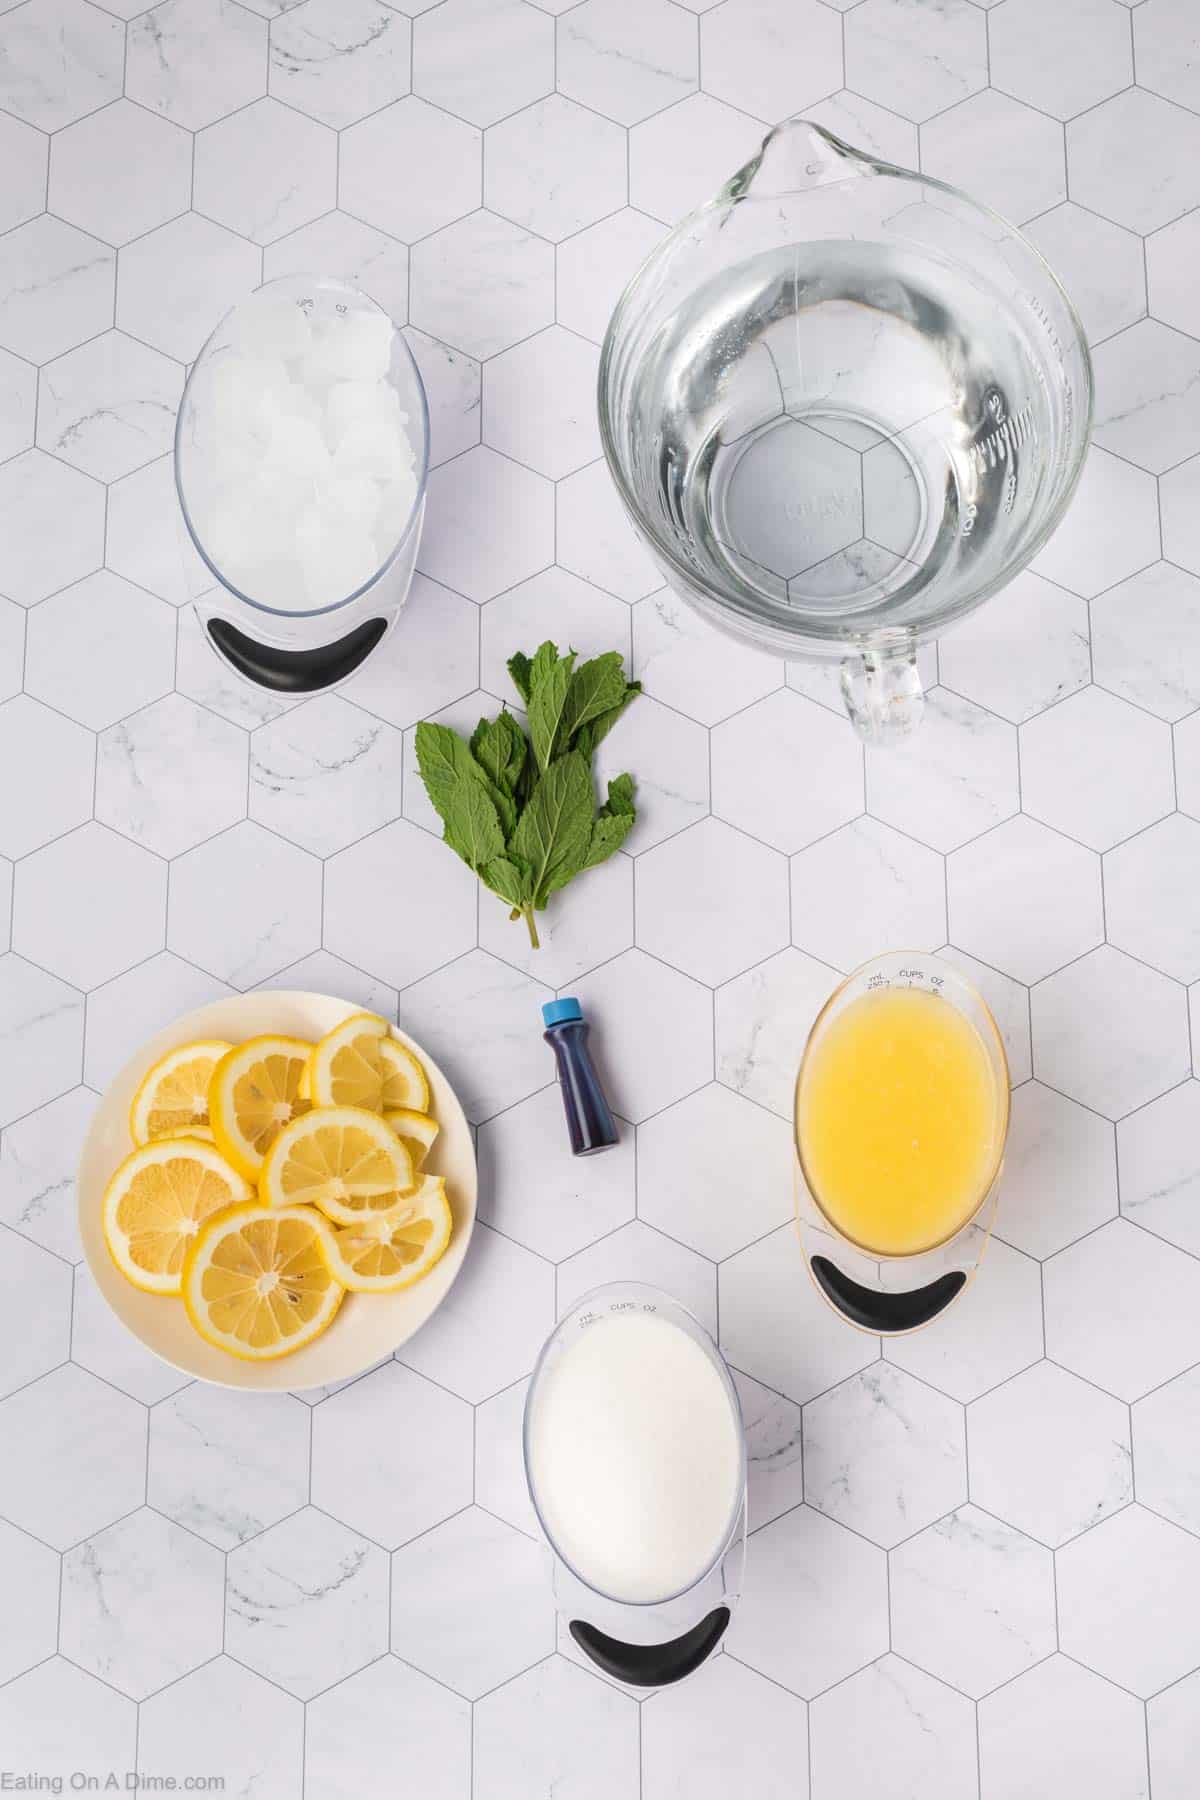 Blue lemonade ingredients - lemon, blue food coloring, mint, water, ice, sugar